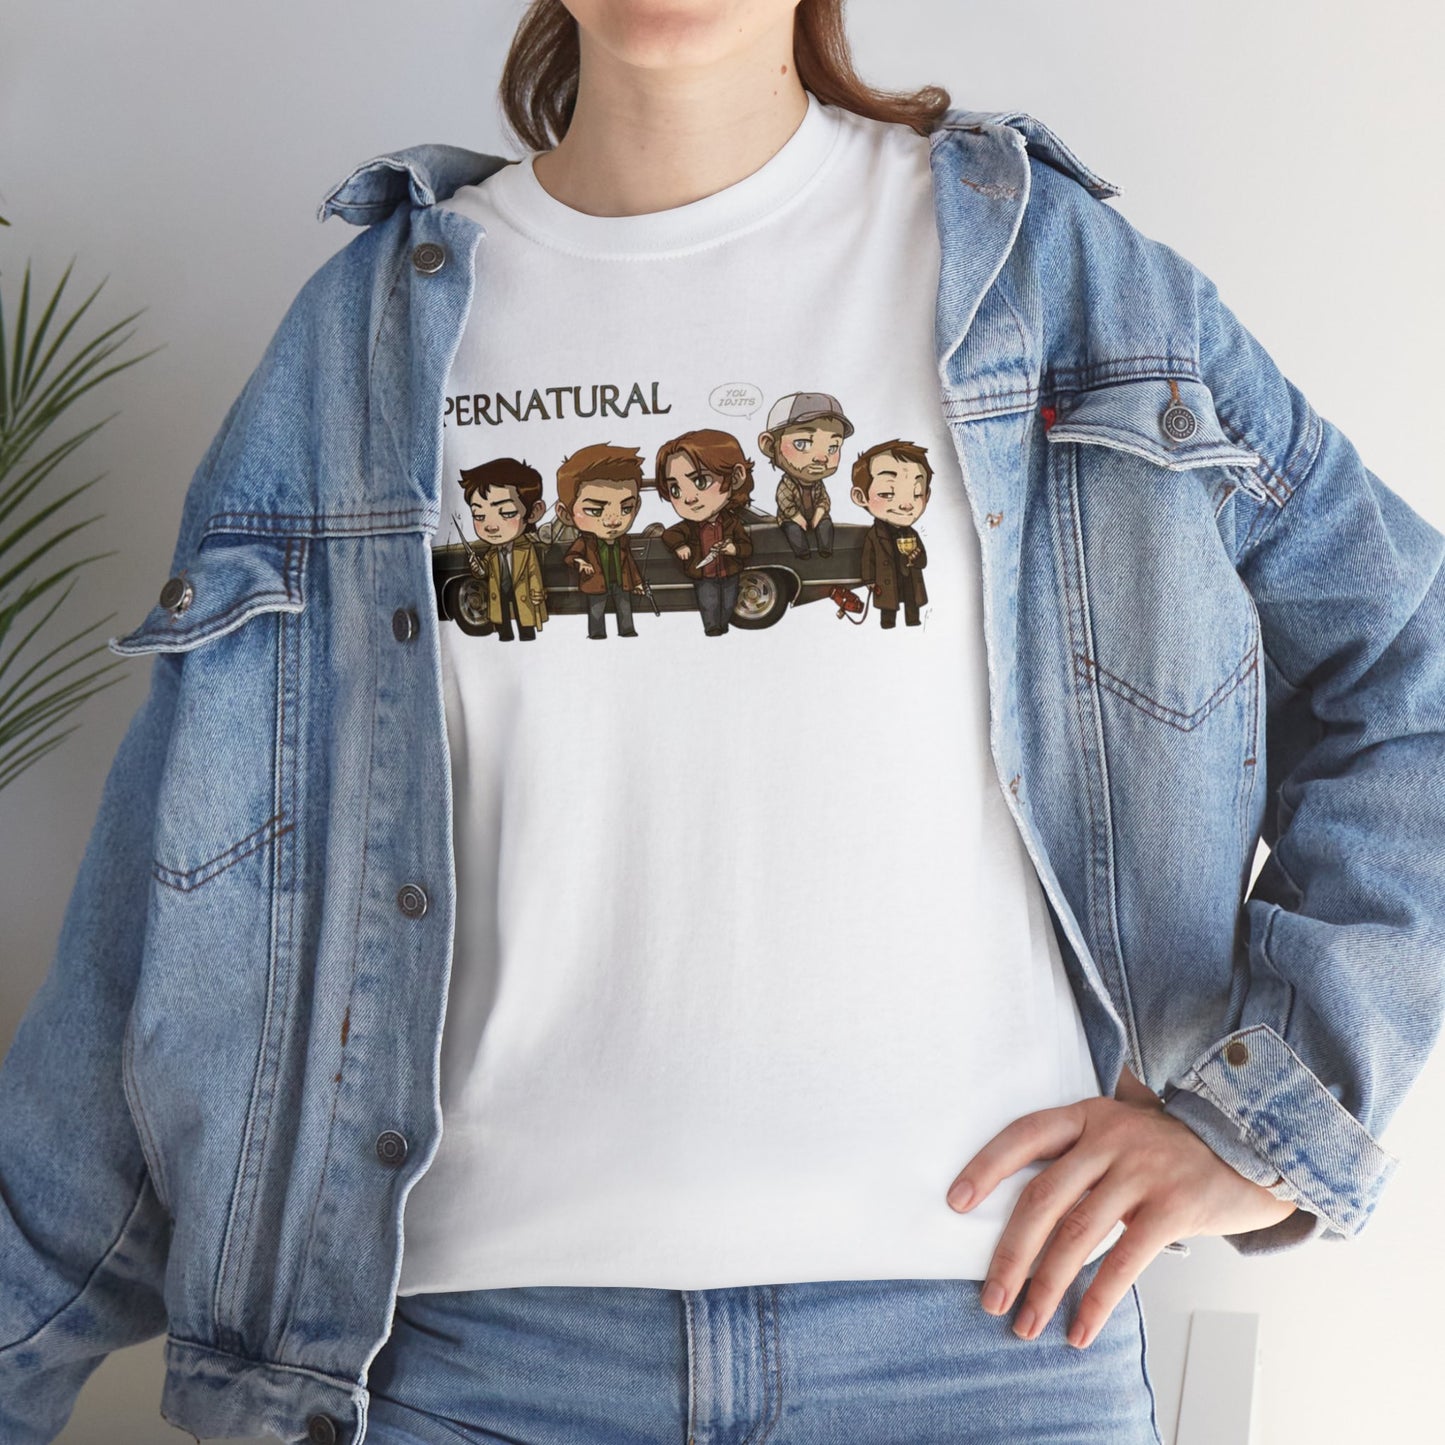 Supernatural Style Shirt